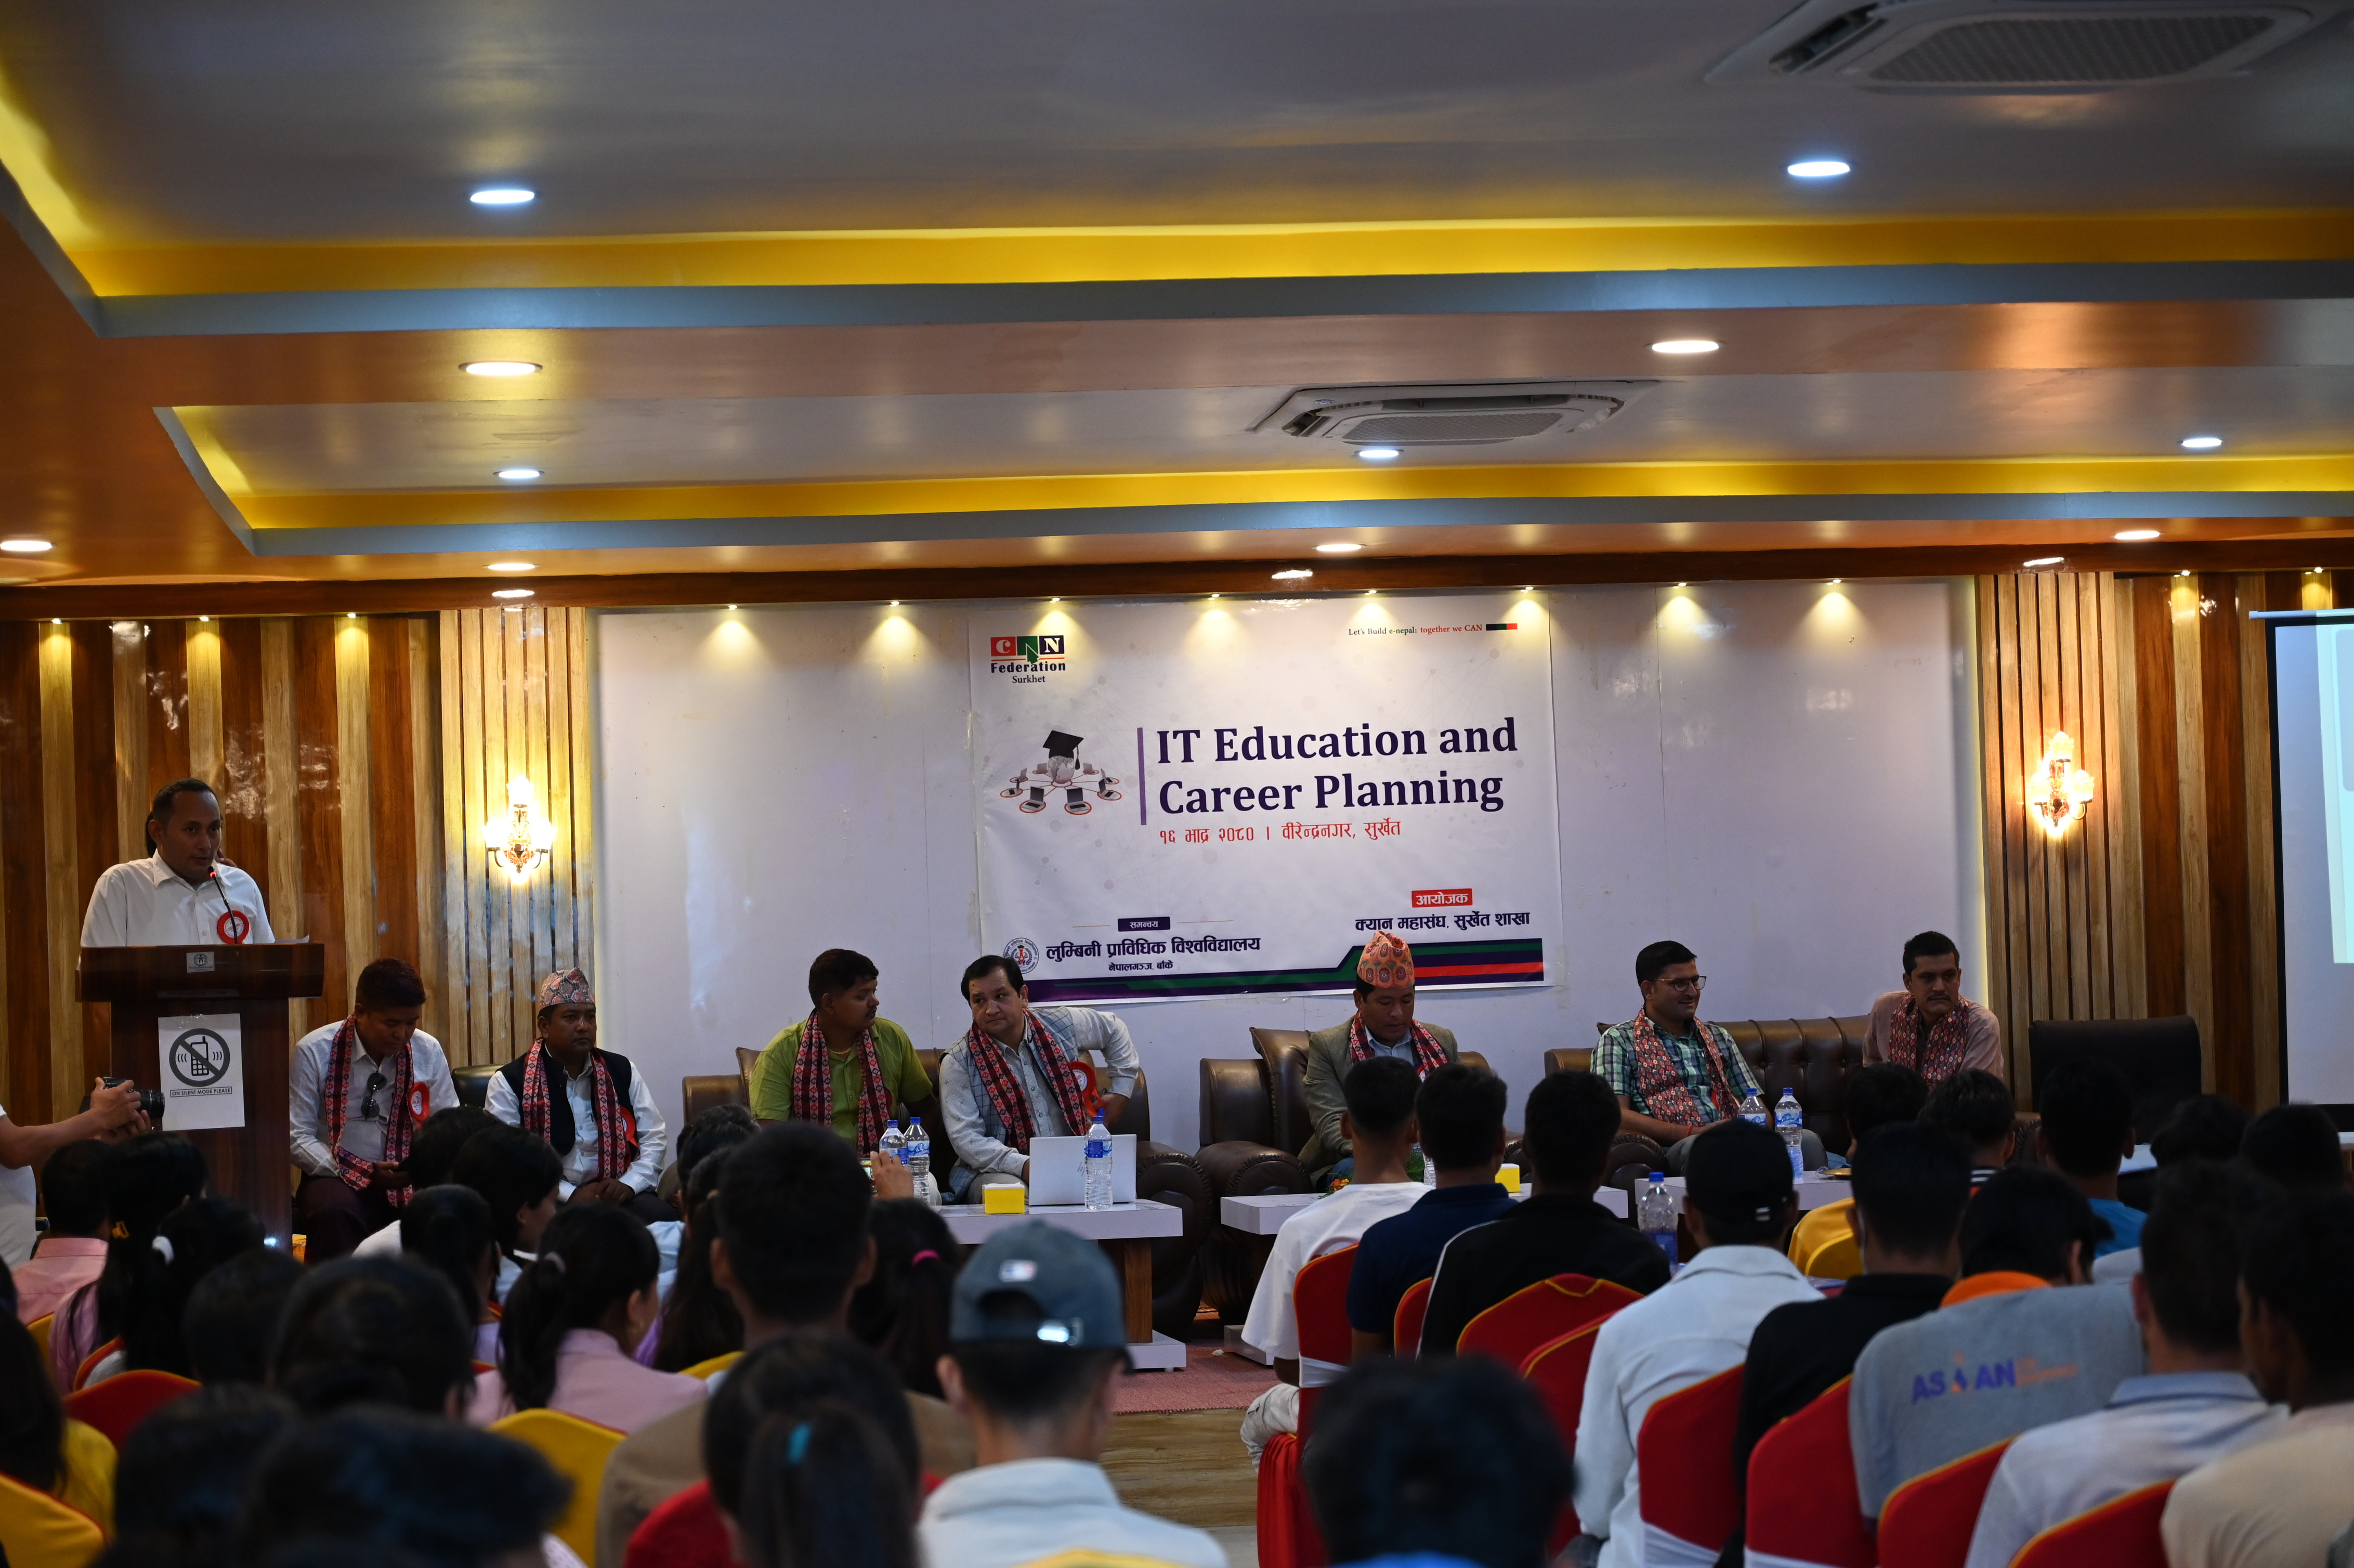 IT Education & It's Career सम्बन्धी कार्यक्रम(कंचनपुर, सुर्खेत)